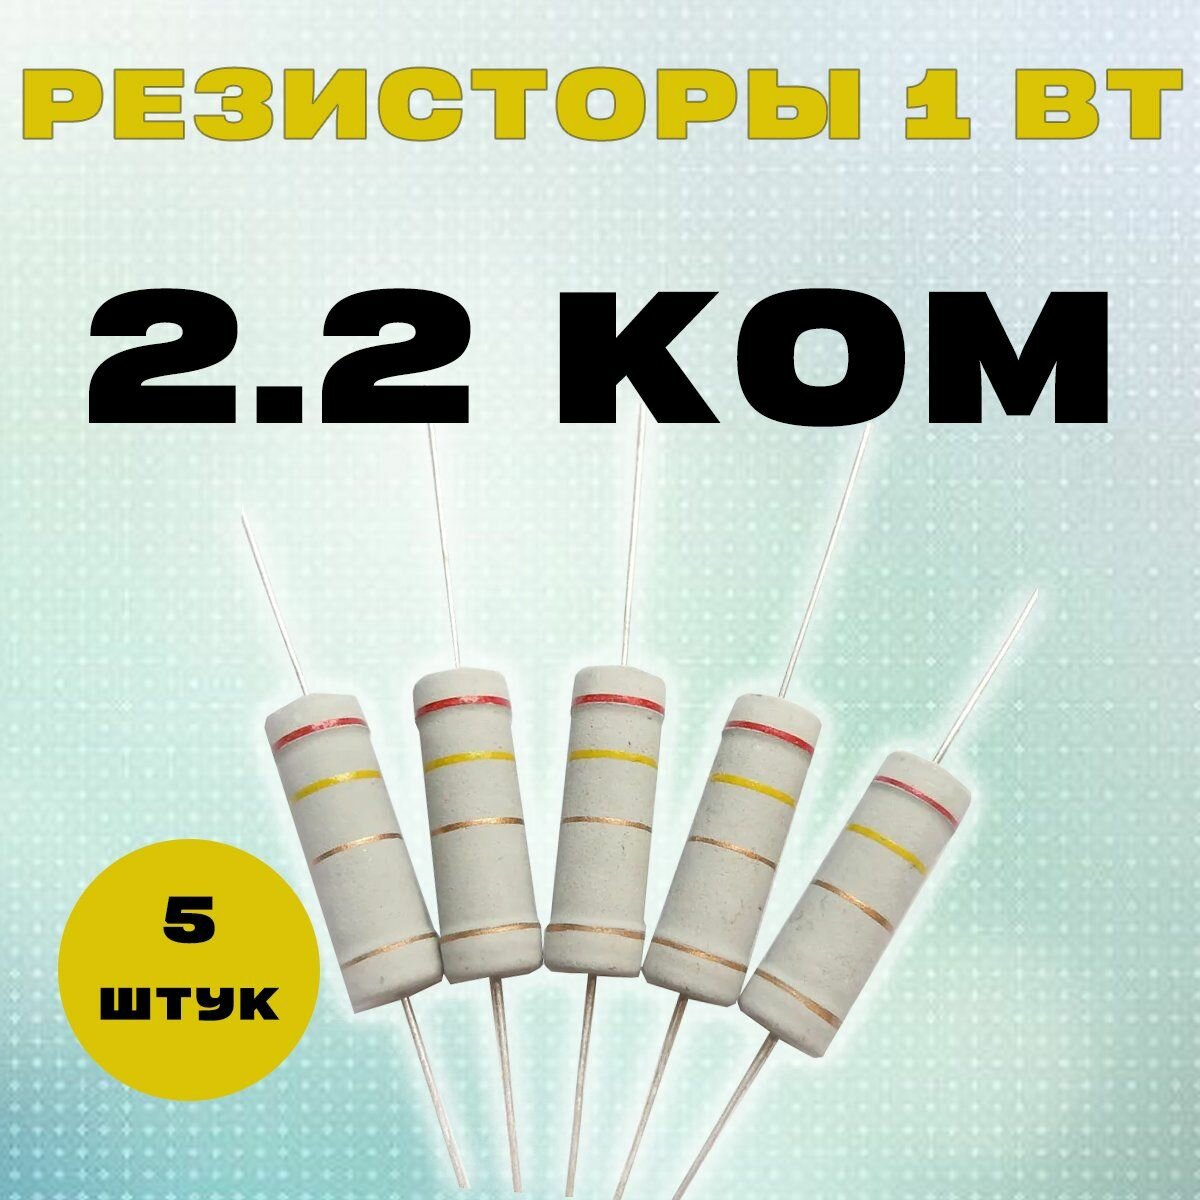 Резистор 1W 2K2 kOm - 1 Вт 2.2 кОм